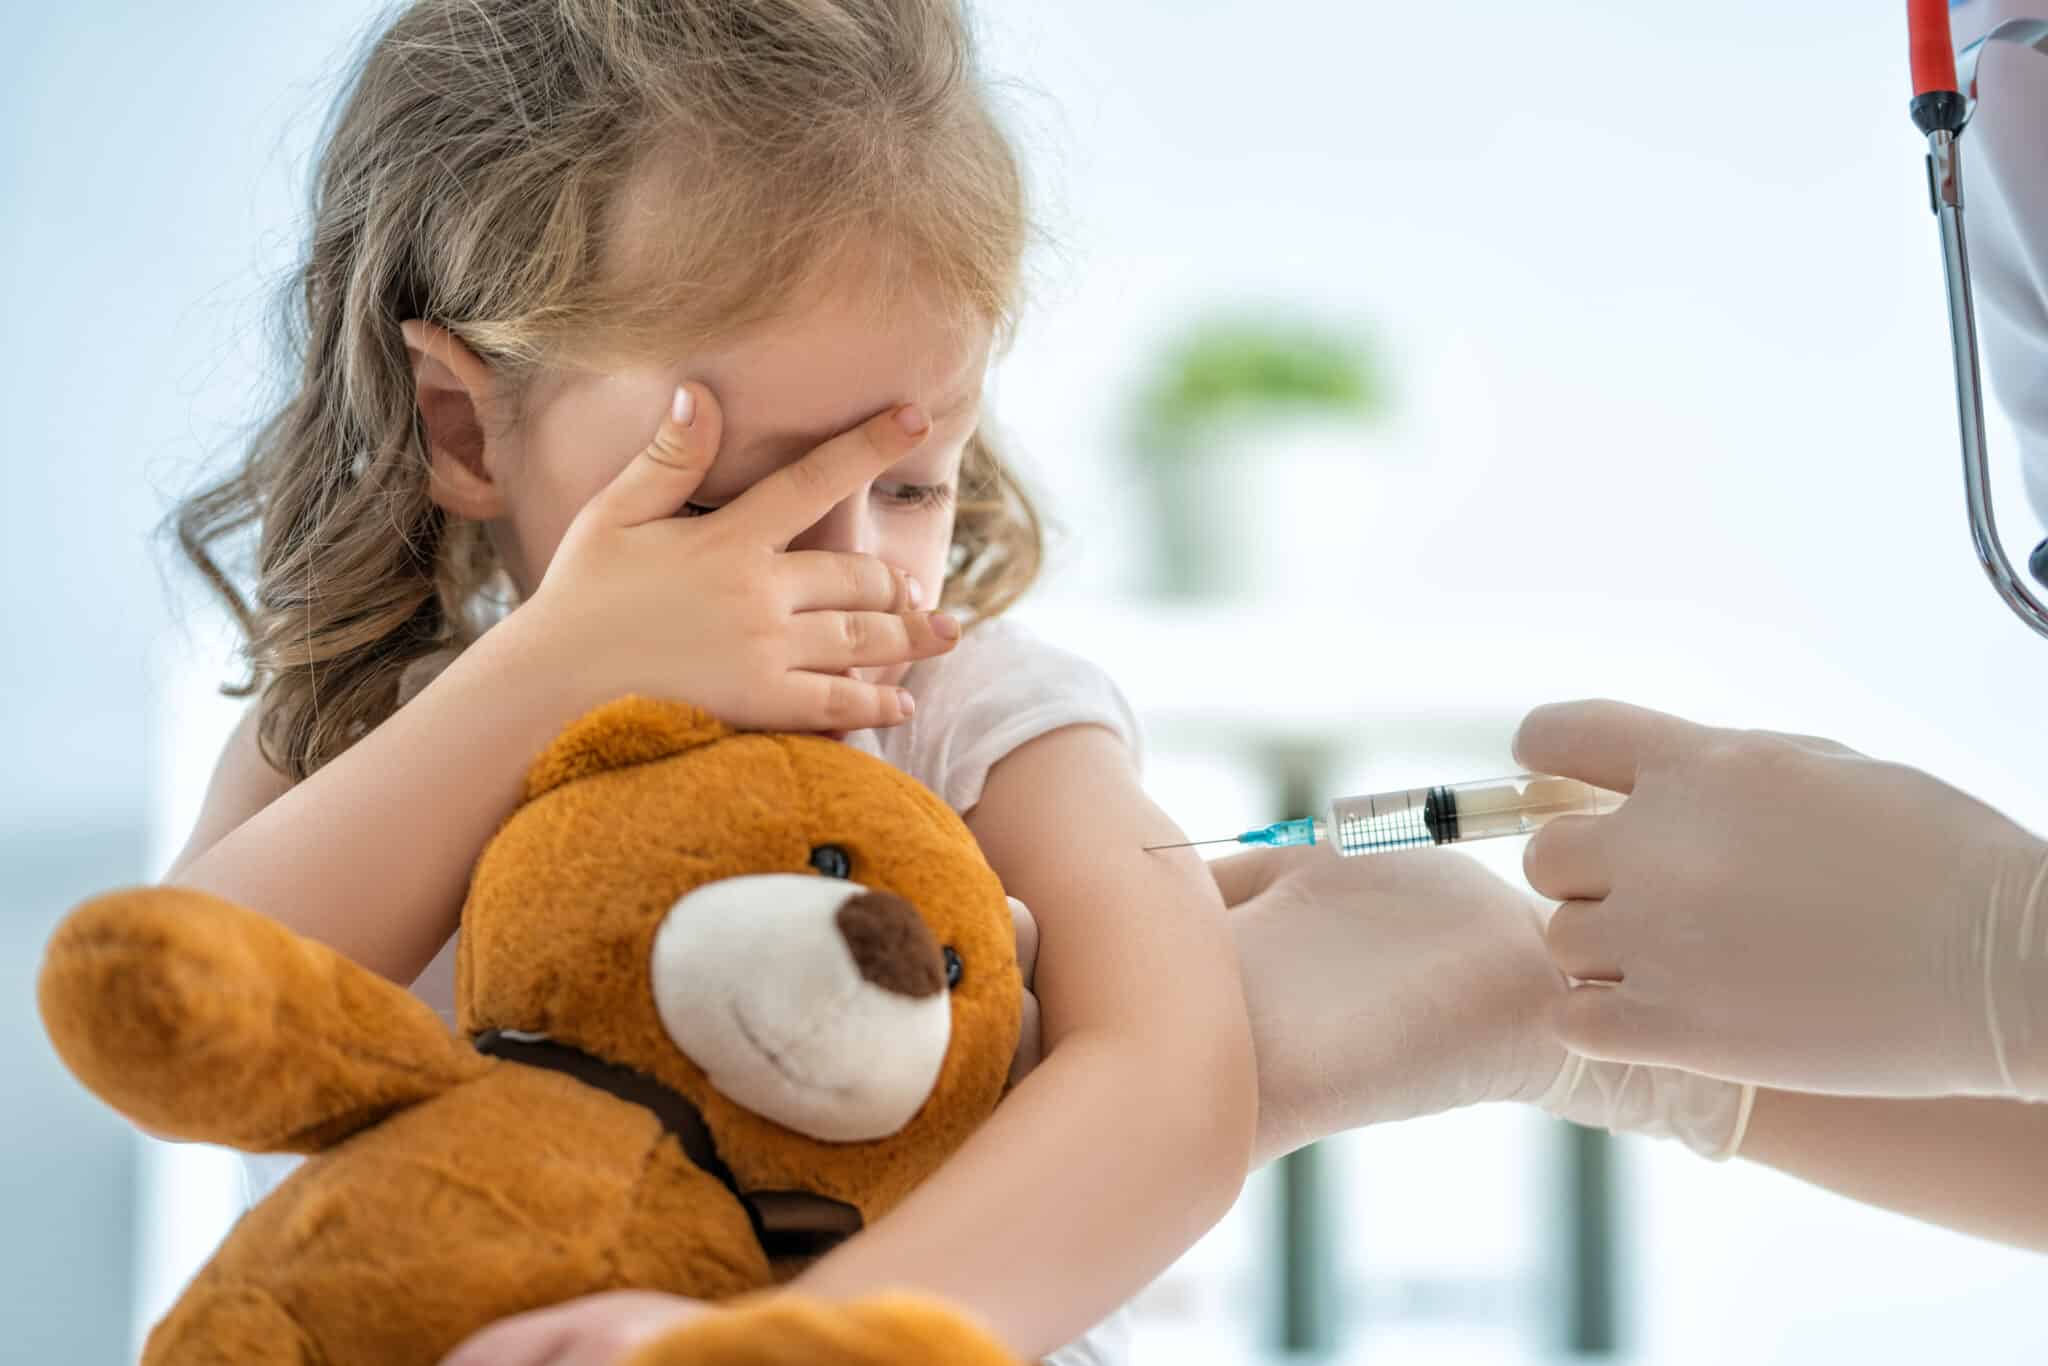 La vaccination Covid-19 dorénavant recommandée chez les enfants à risque de forme grave